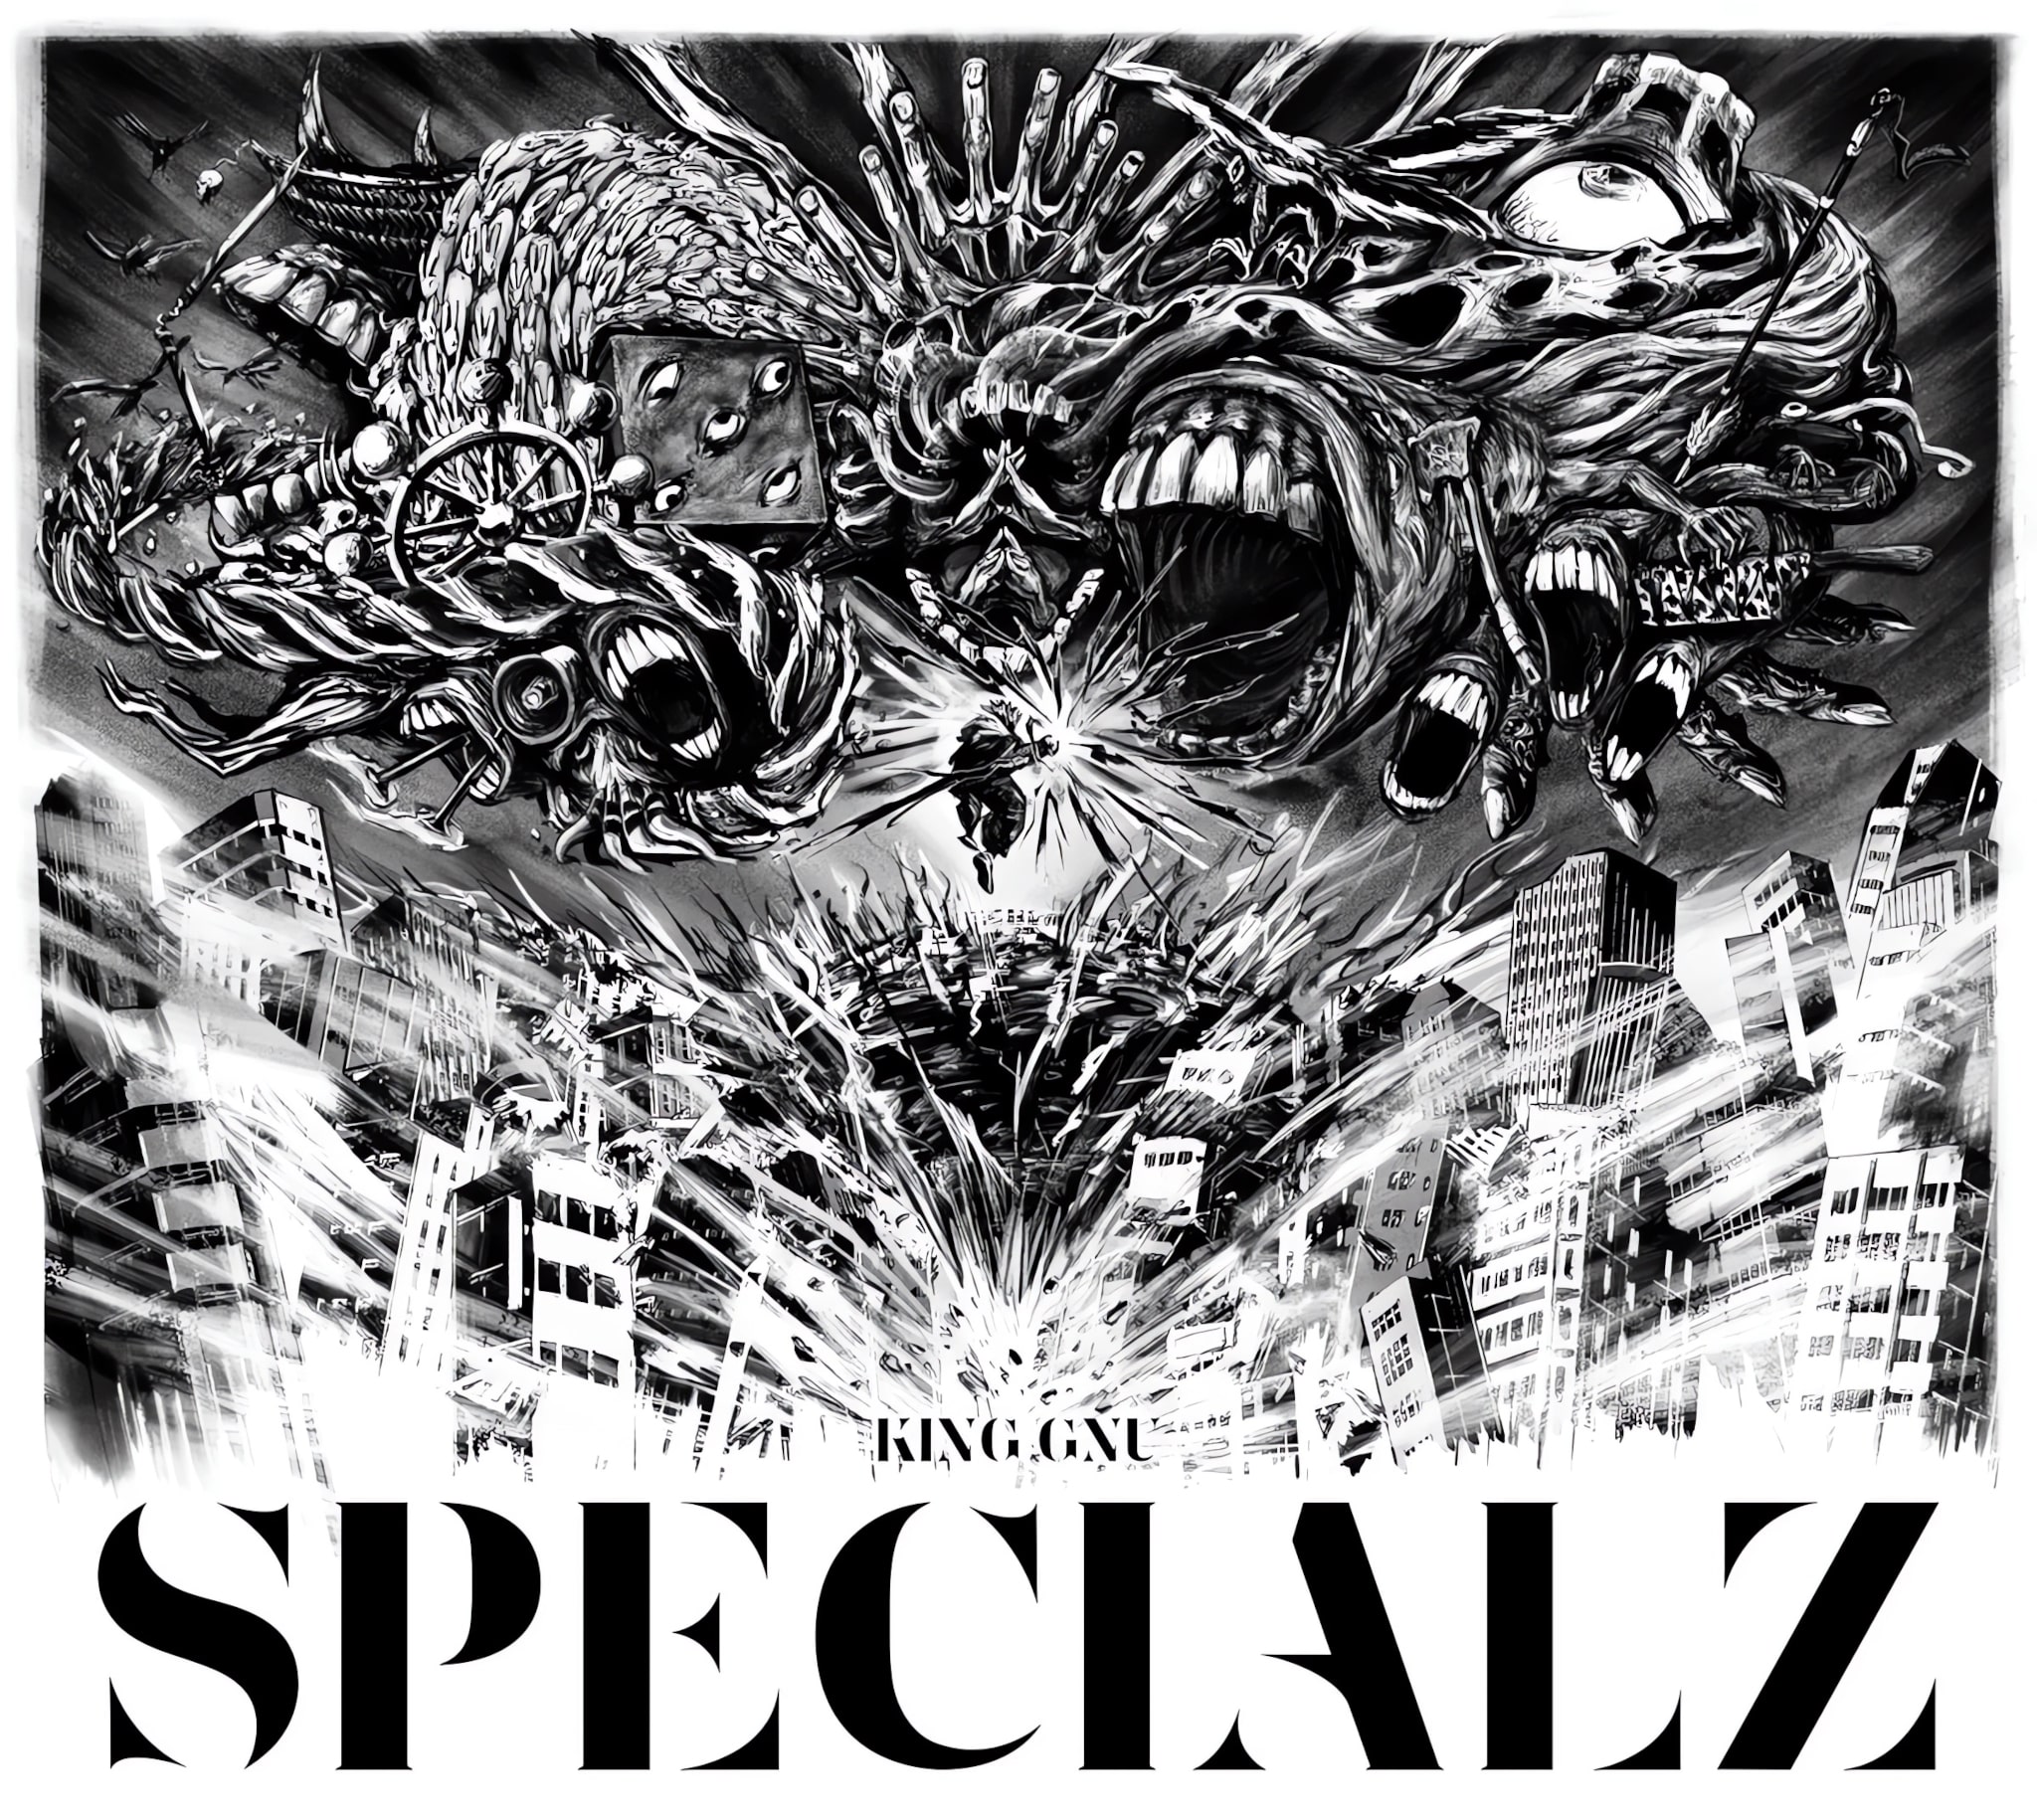 Couverture du CD de la chanson SPECIALZ par le groupe King Gnu